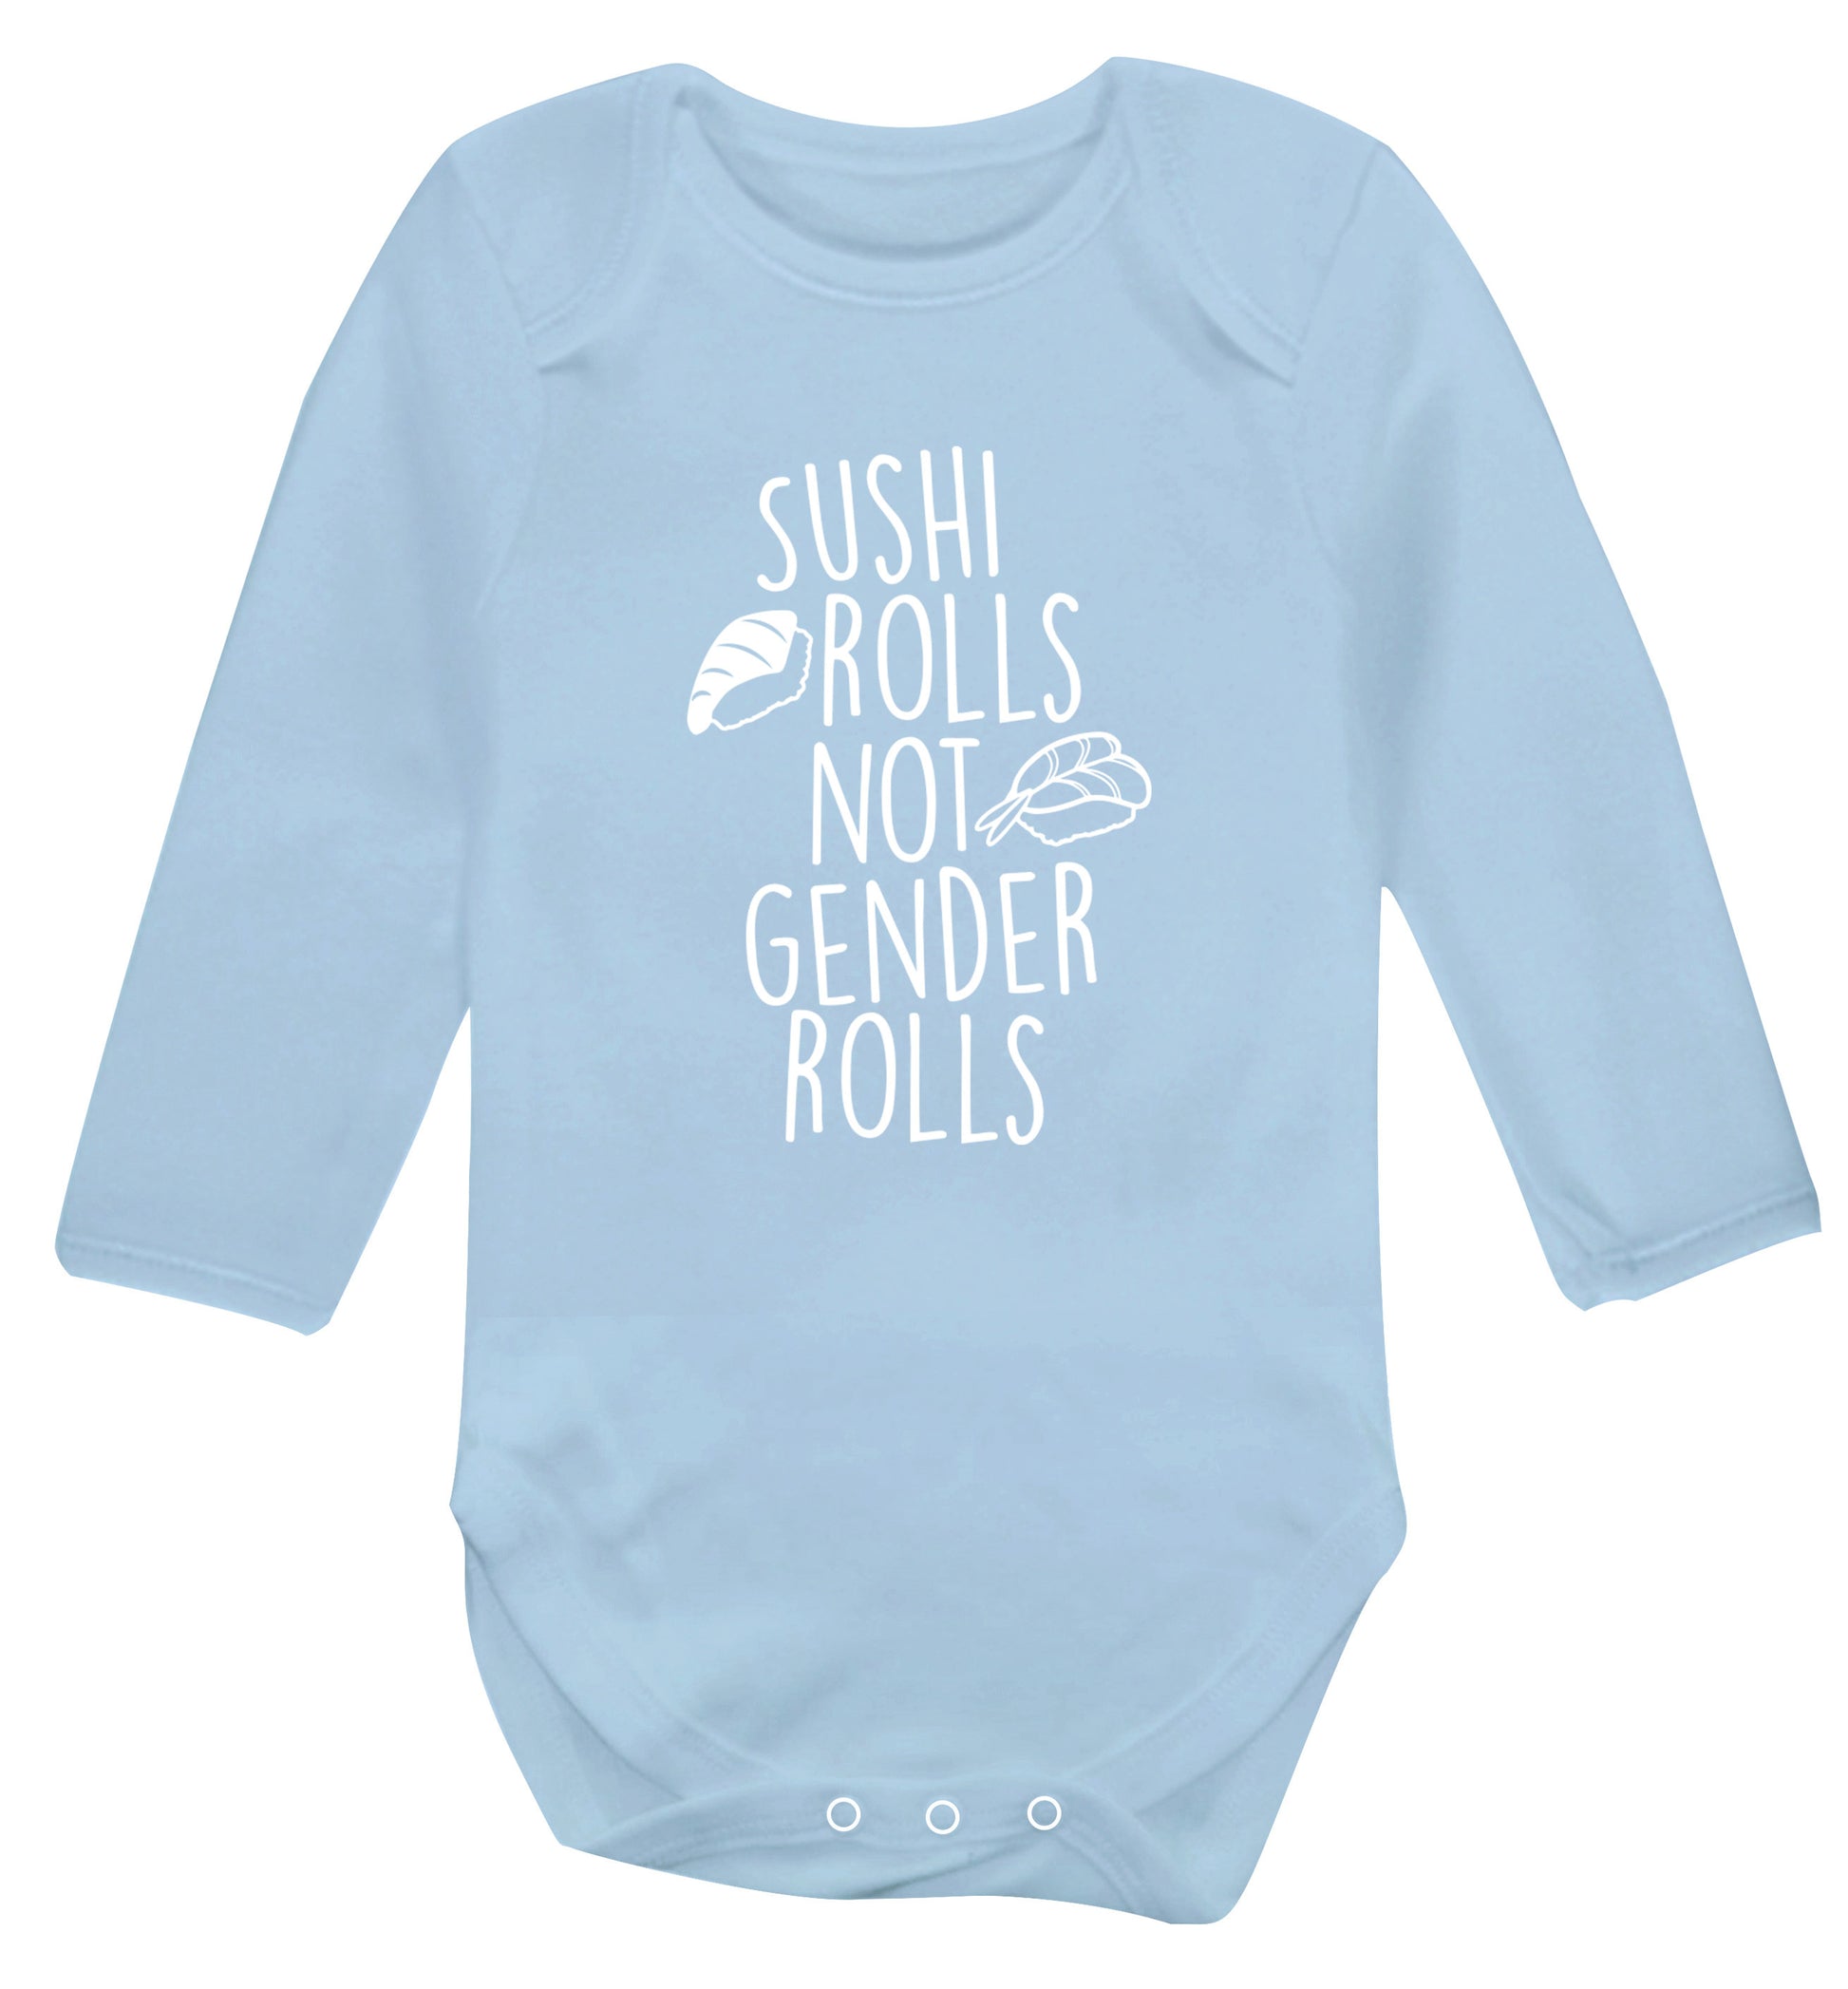 Sushi rolls not gender rolls Baby Vest long sleeved pale blue 6-12 months